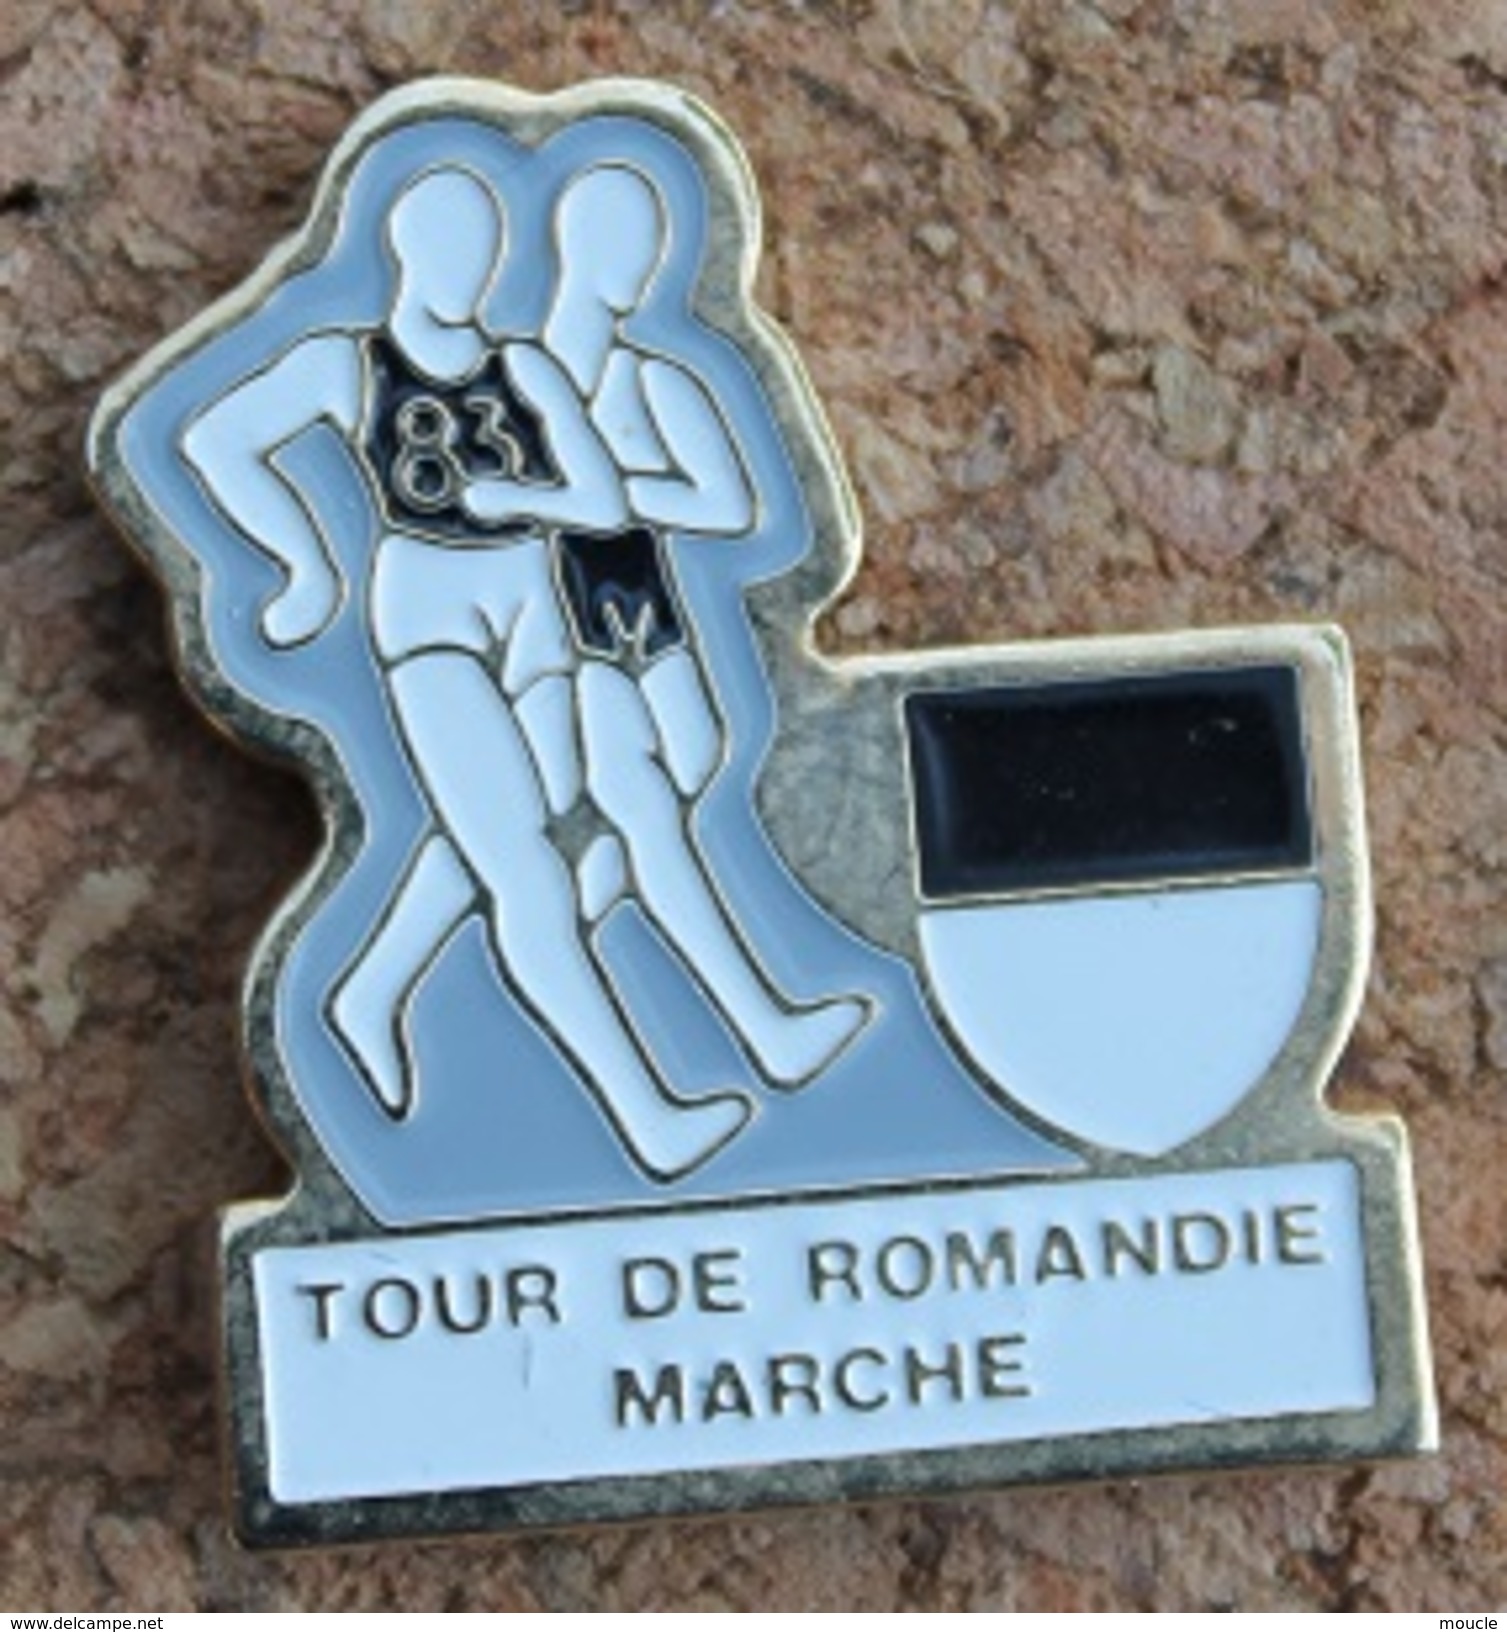 TOUR DE ROMANDIE A LA MARCHE - SUISSE - ETAPE DU CANTON DE FRIBOURG - MARCHEURS  -  SCHWEIZ - SVIZZERA - SUIZA -   (13) - Athletics